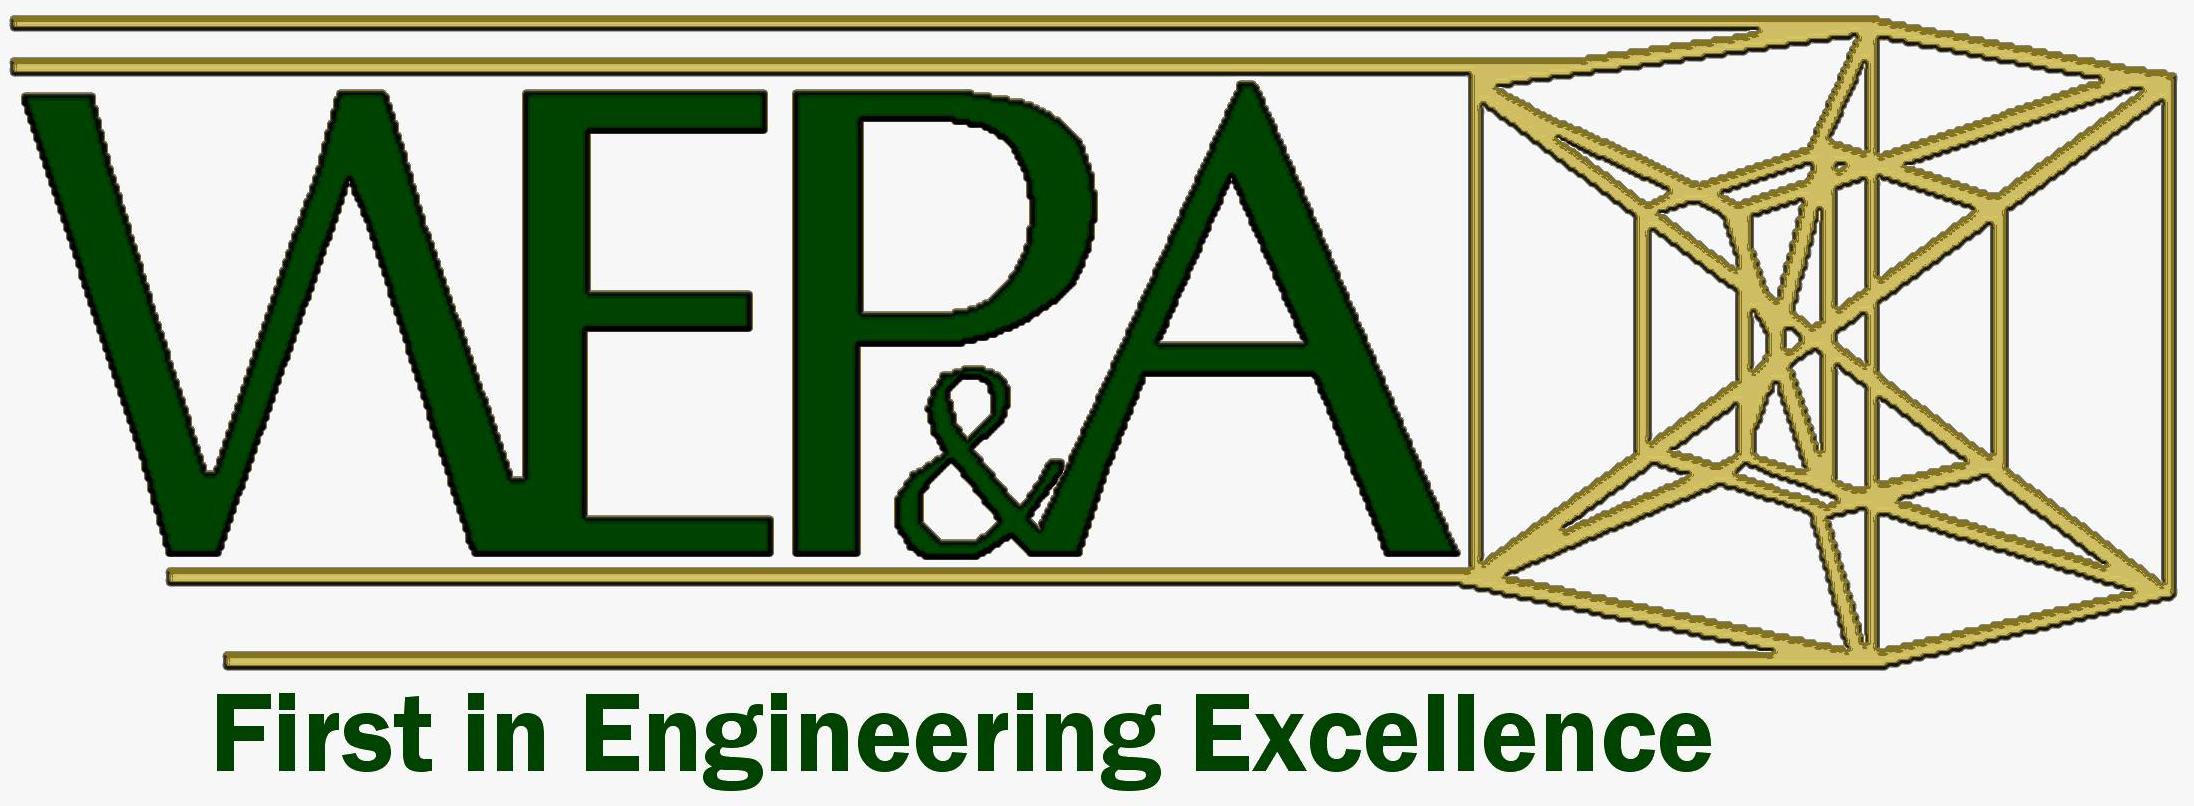 WEP Logo detail image